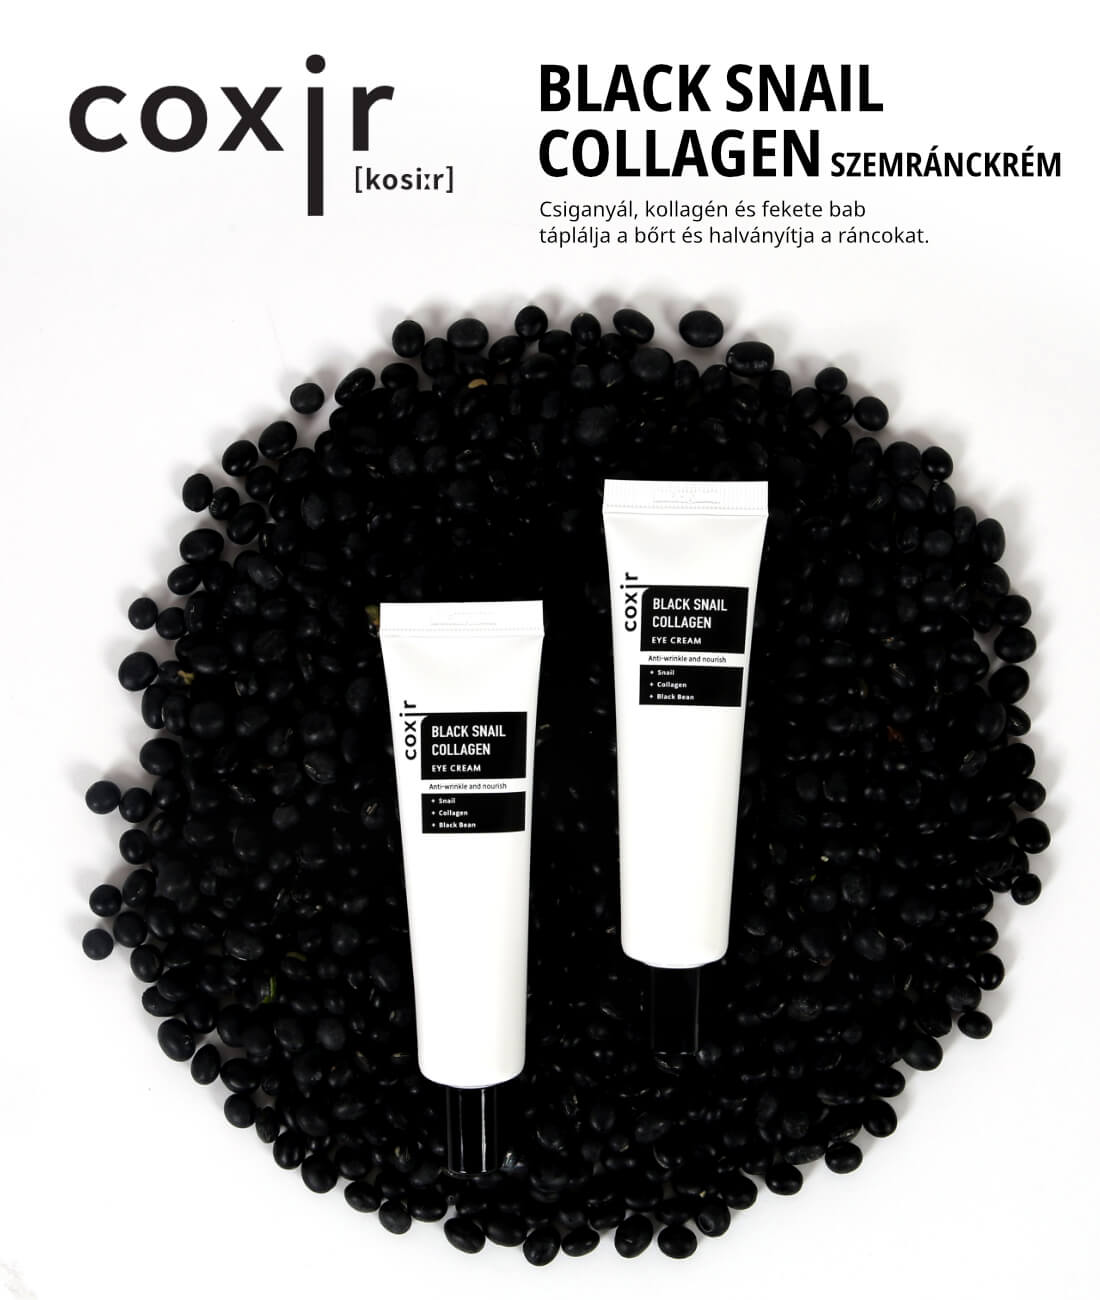 coxir-black-snail-collagen-szemranckrem-leiras-1